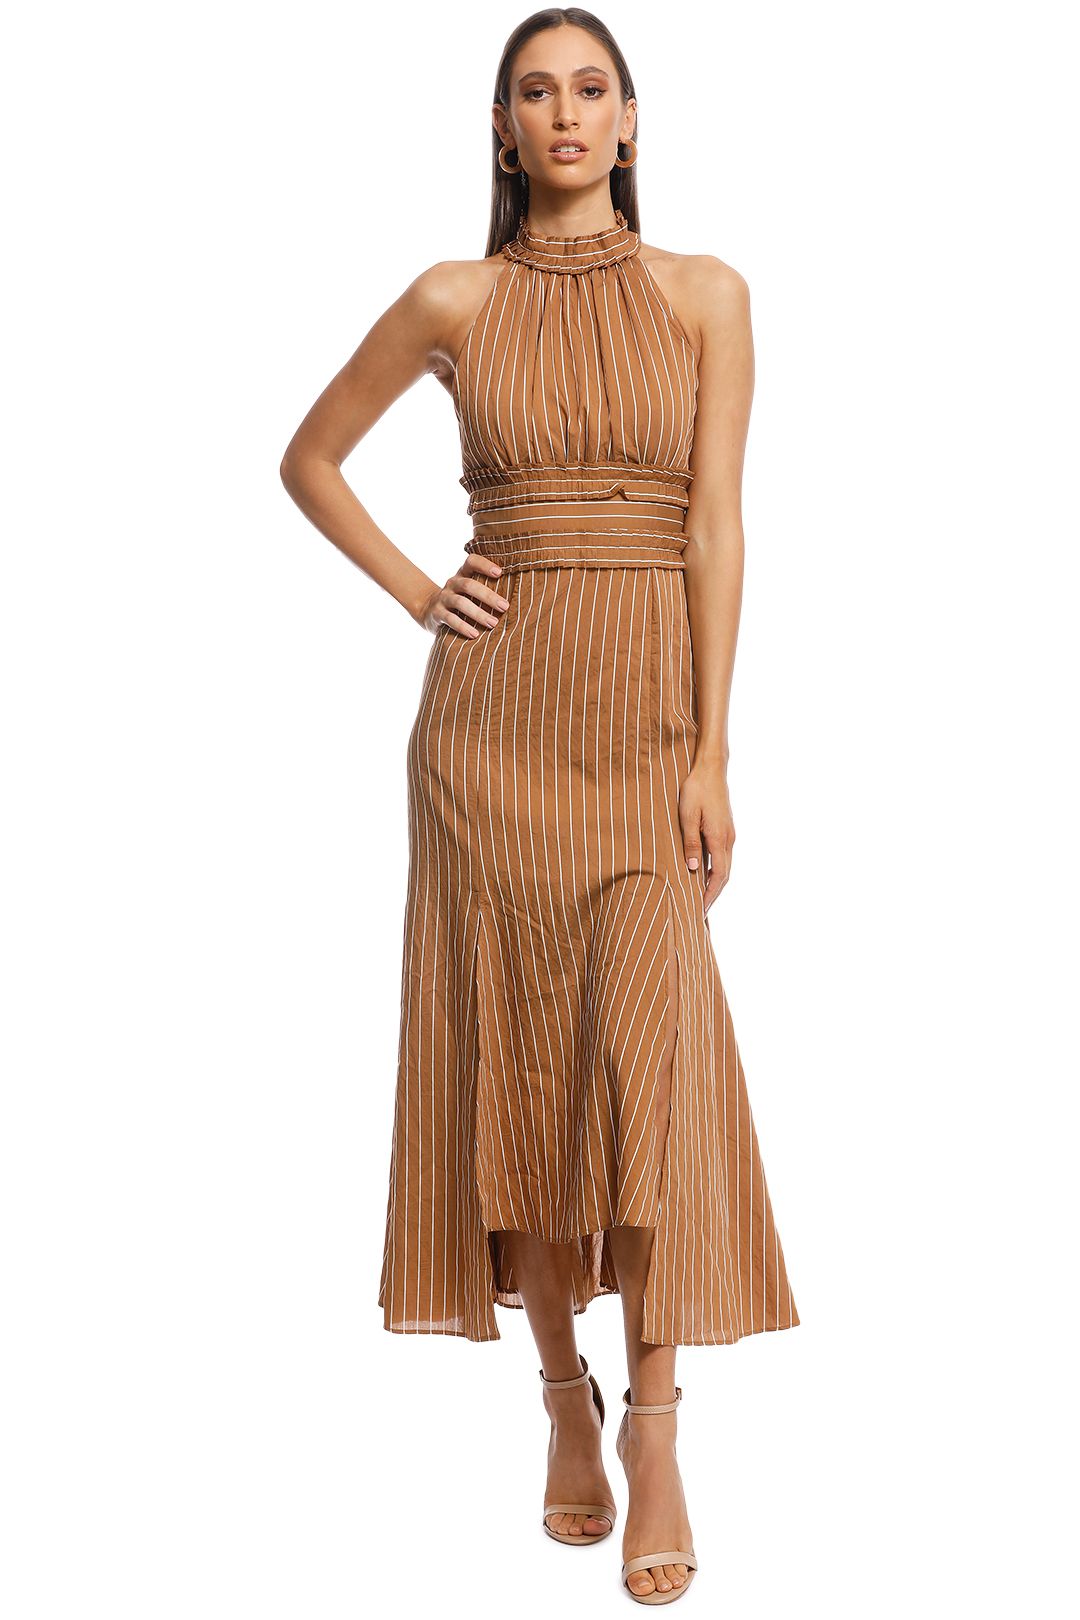 CMEO Collective - Suffuse Midi Dress - Tan Stripe - Front